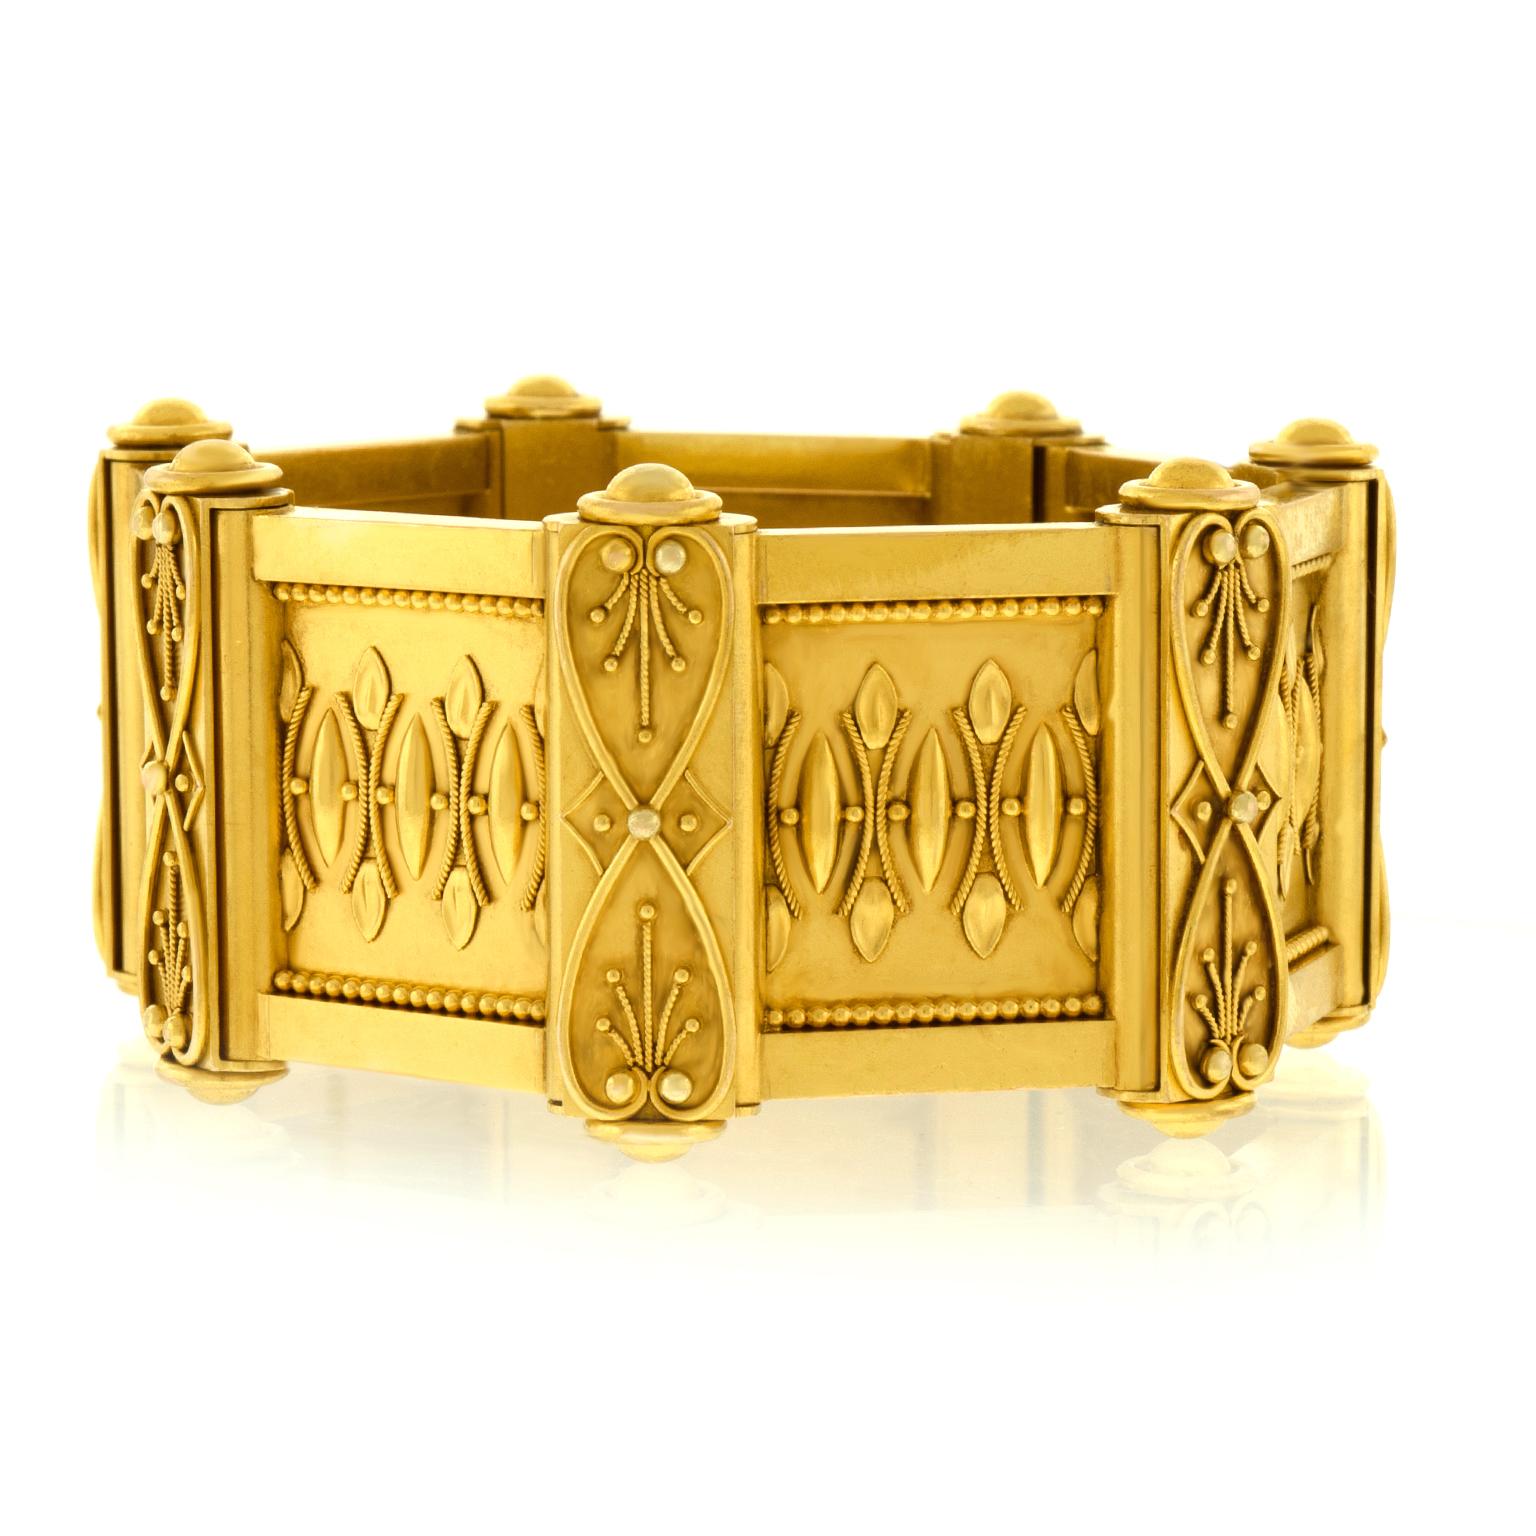 Antique Renaissance Revival Gold Bracelet 4